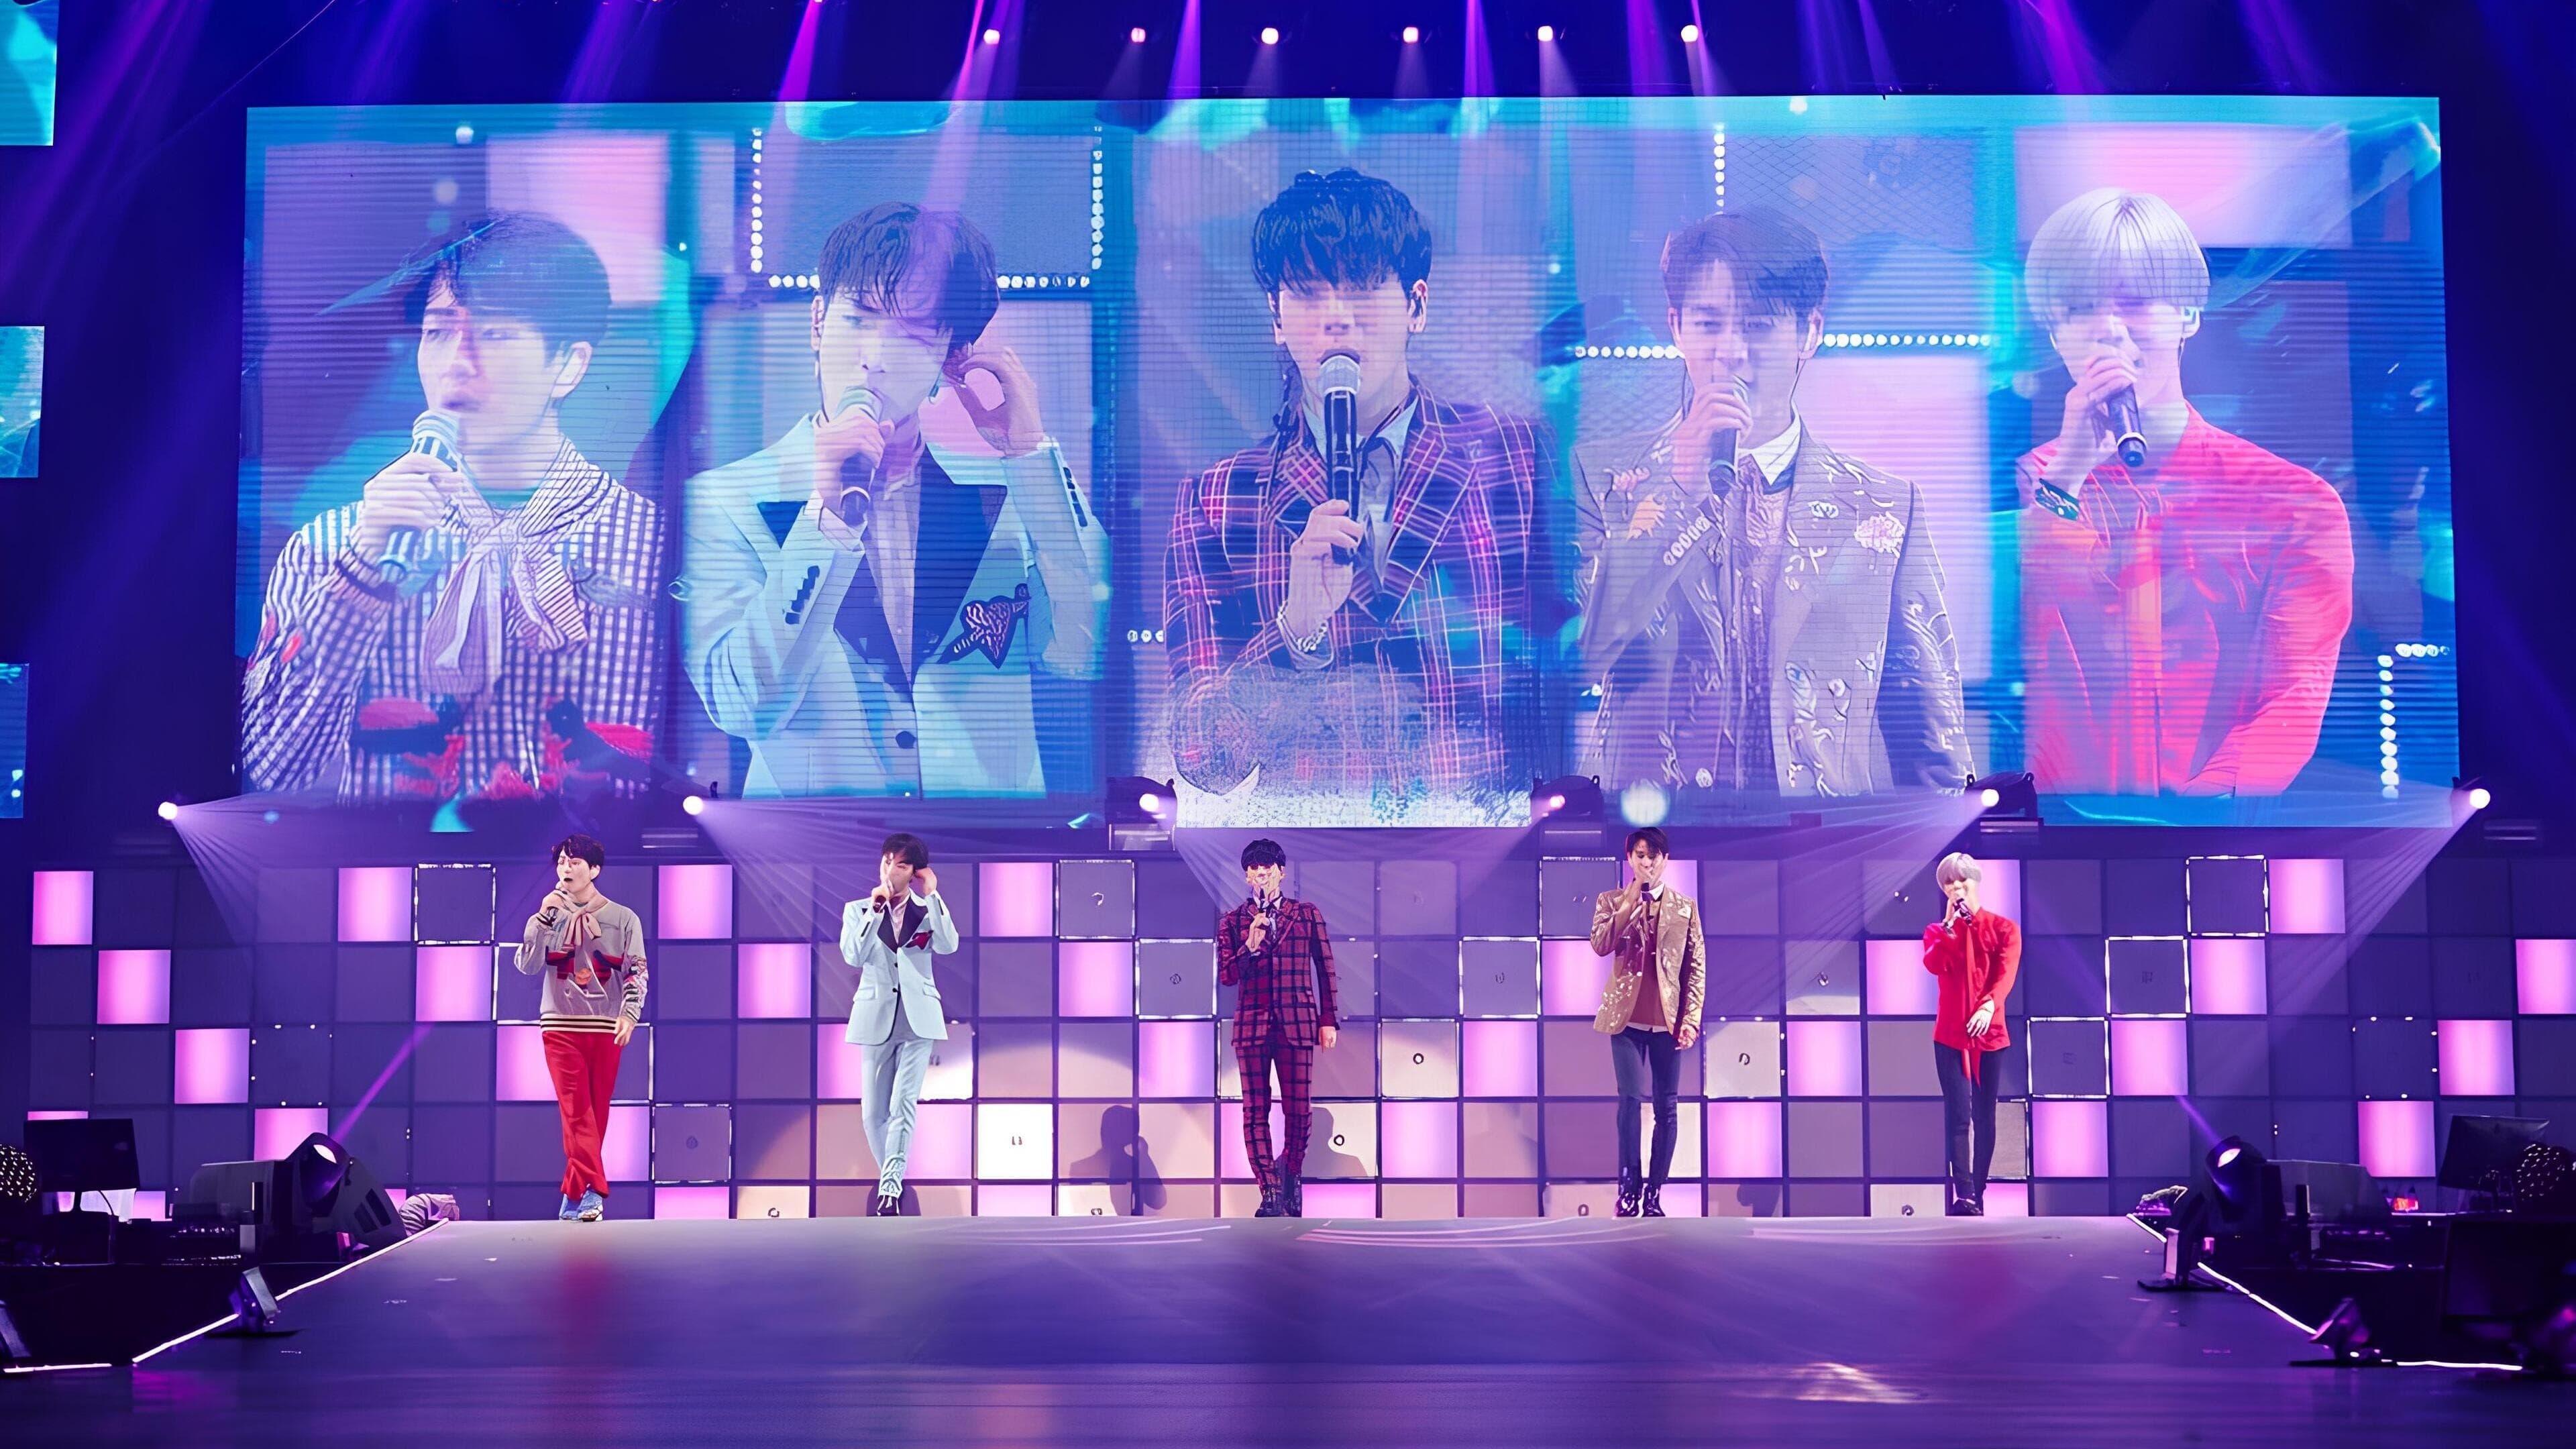 SHINee Concert "SHINee World V" backdrop